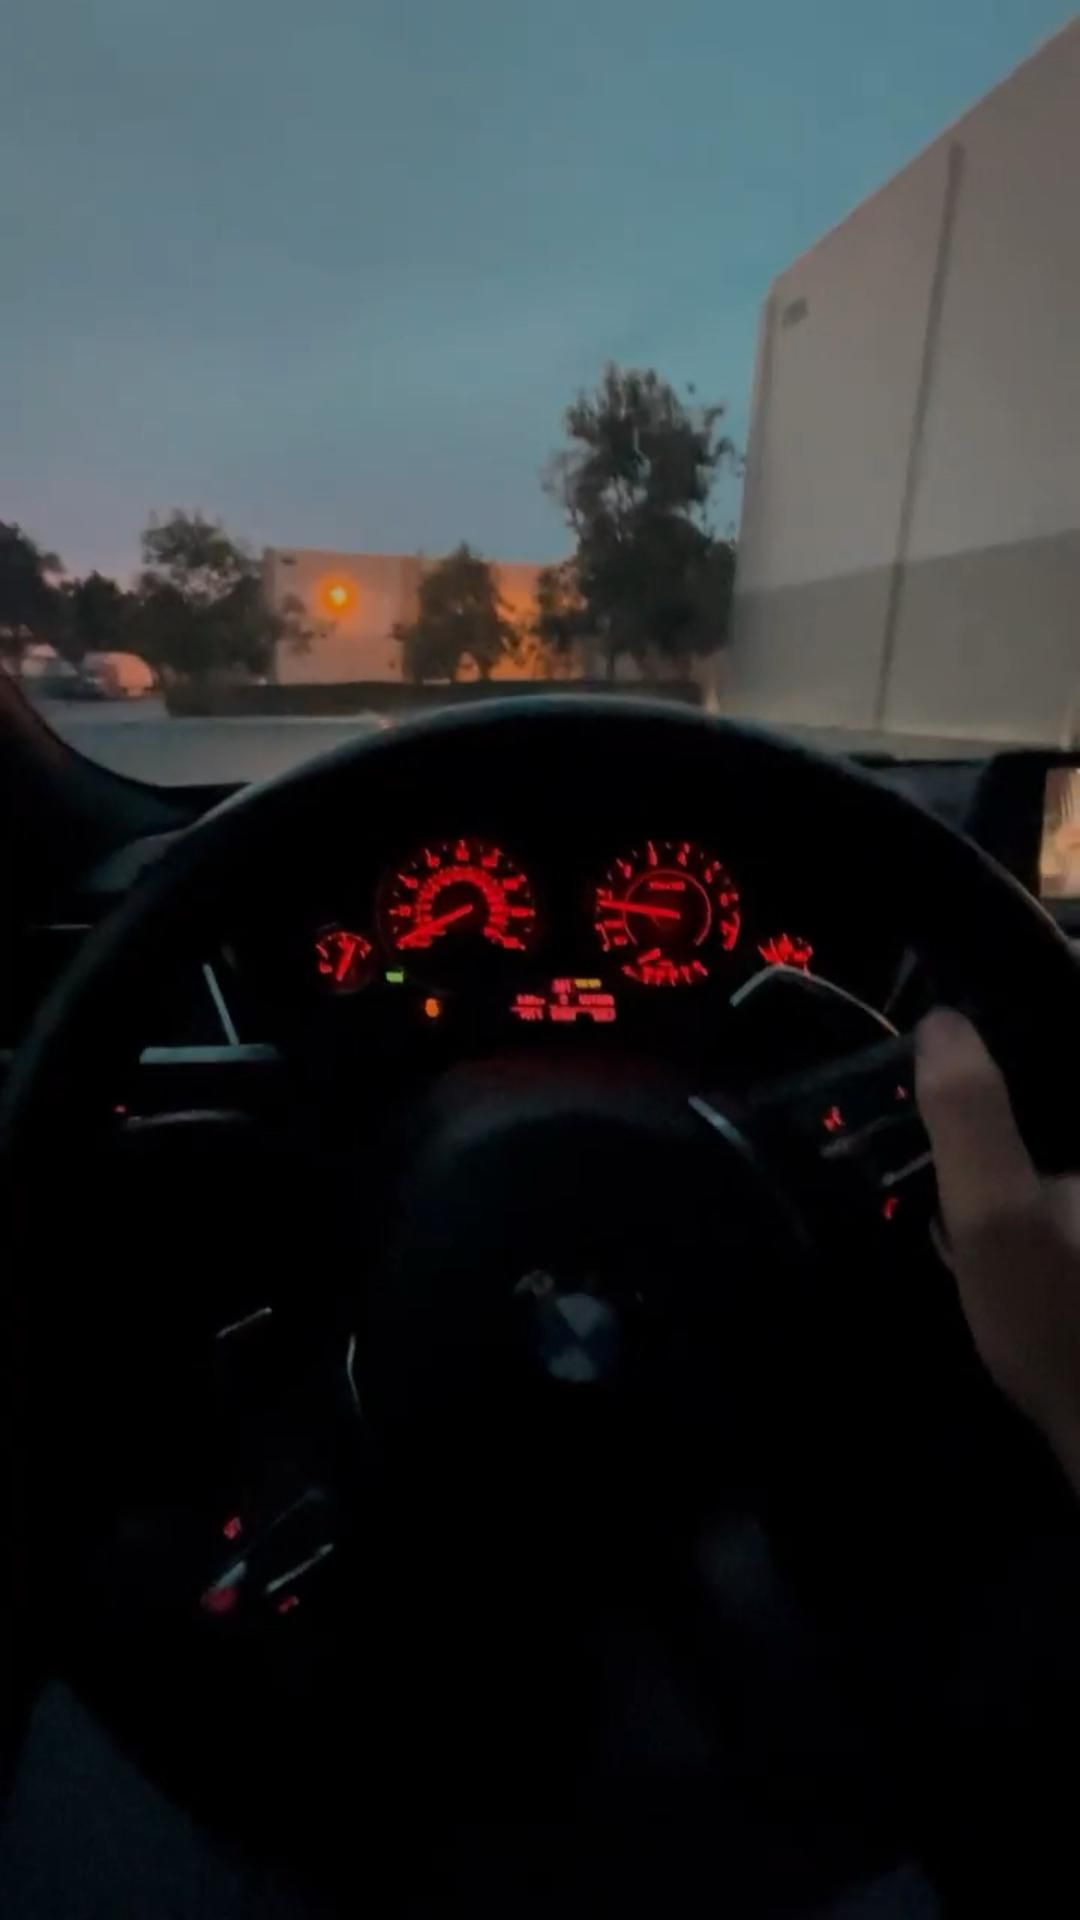 Красивые фото парень в машине ночью на заставку (21)